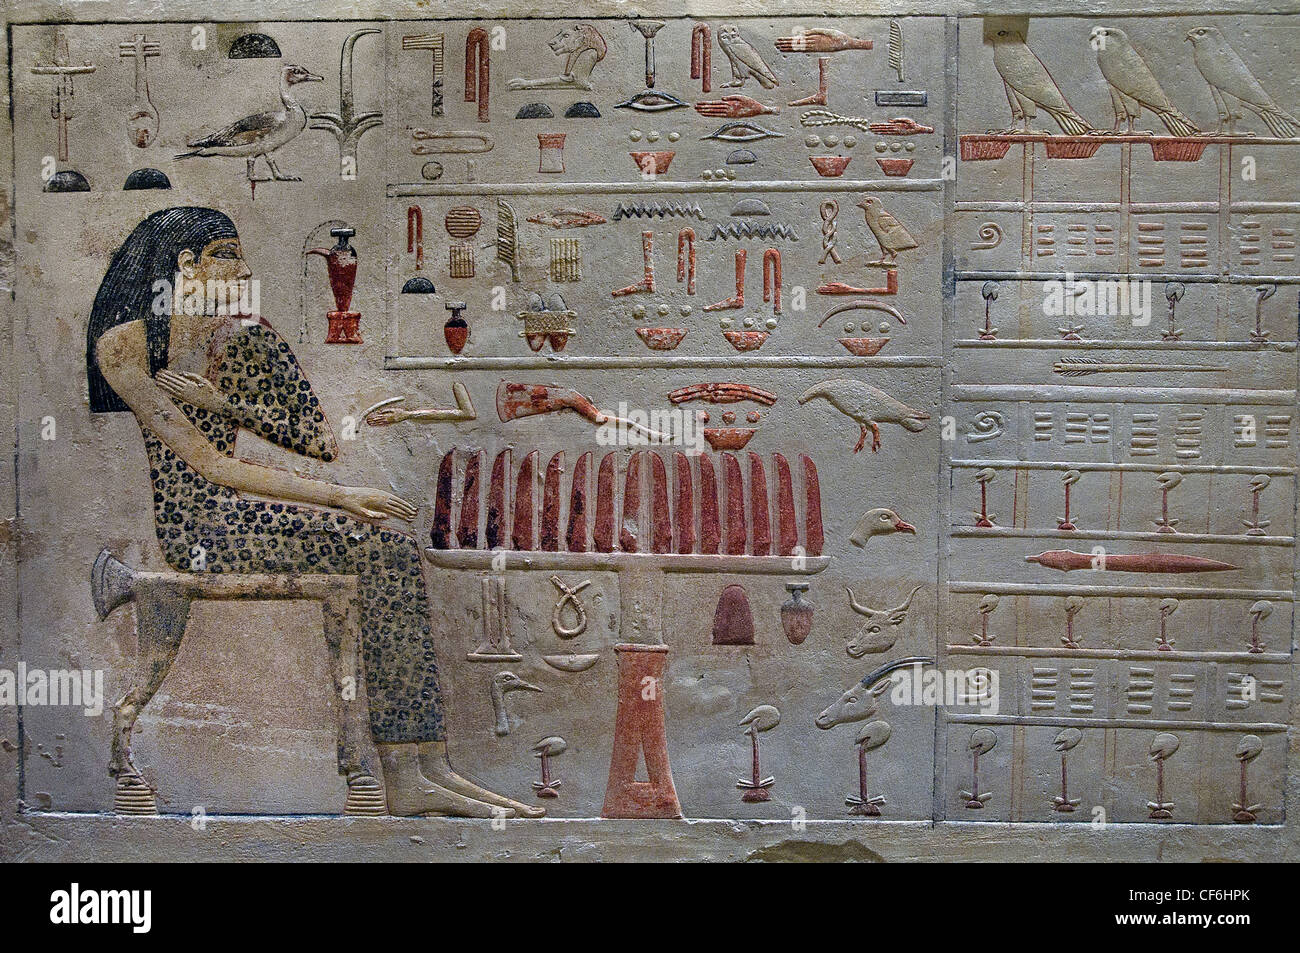 La princesa Nefertiabet delante de su comida reinado de Khéops - Keops 2590 - 2565 BC 4 Dynasty Giza Egipto jeroglífico egipcio Foto de stock